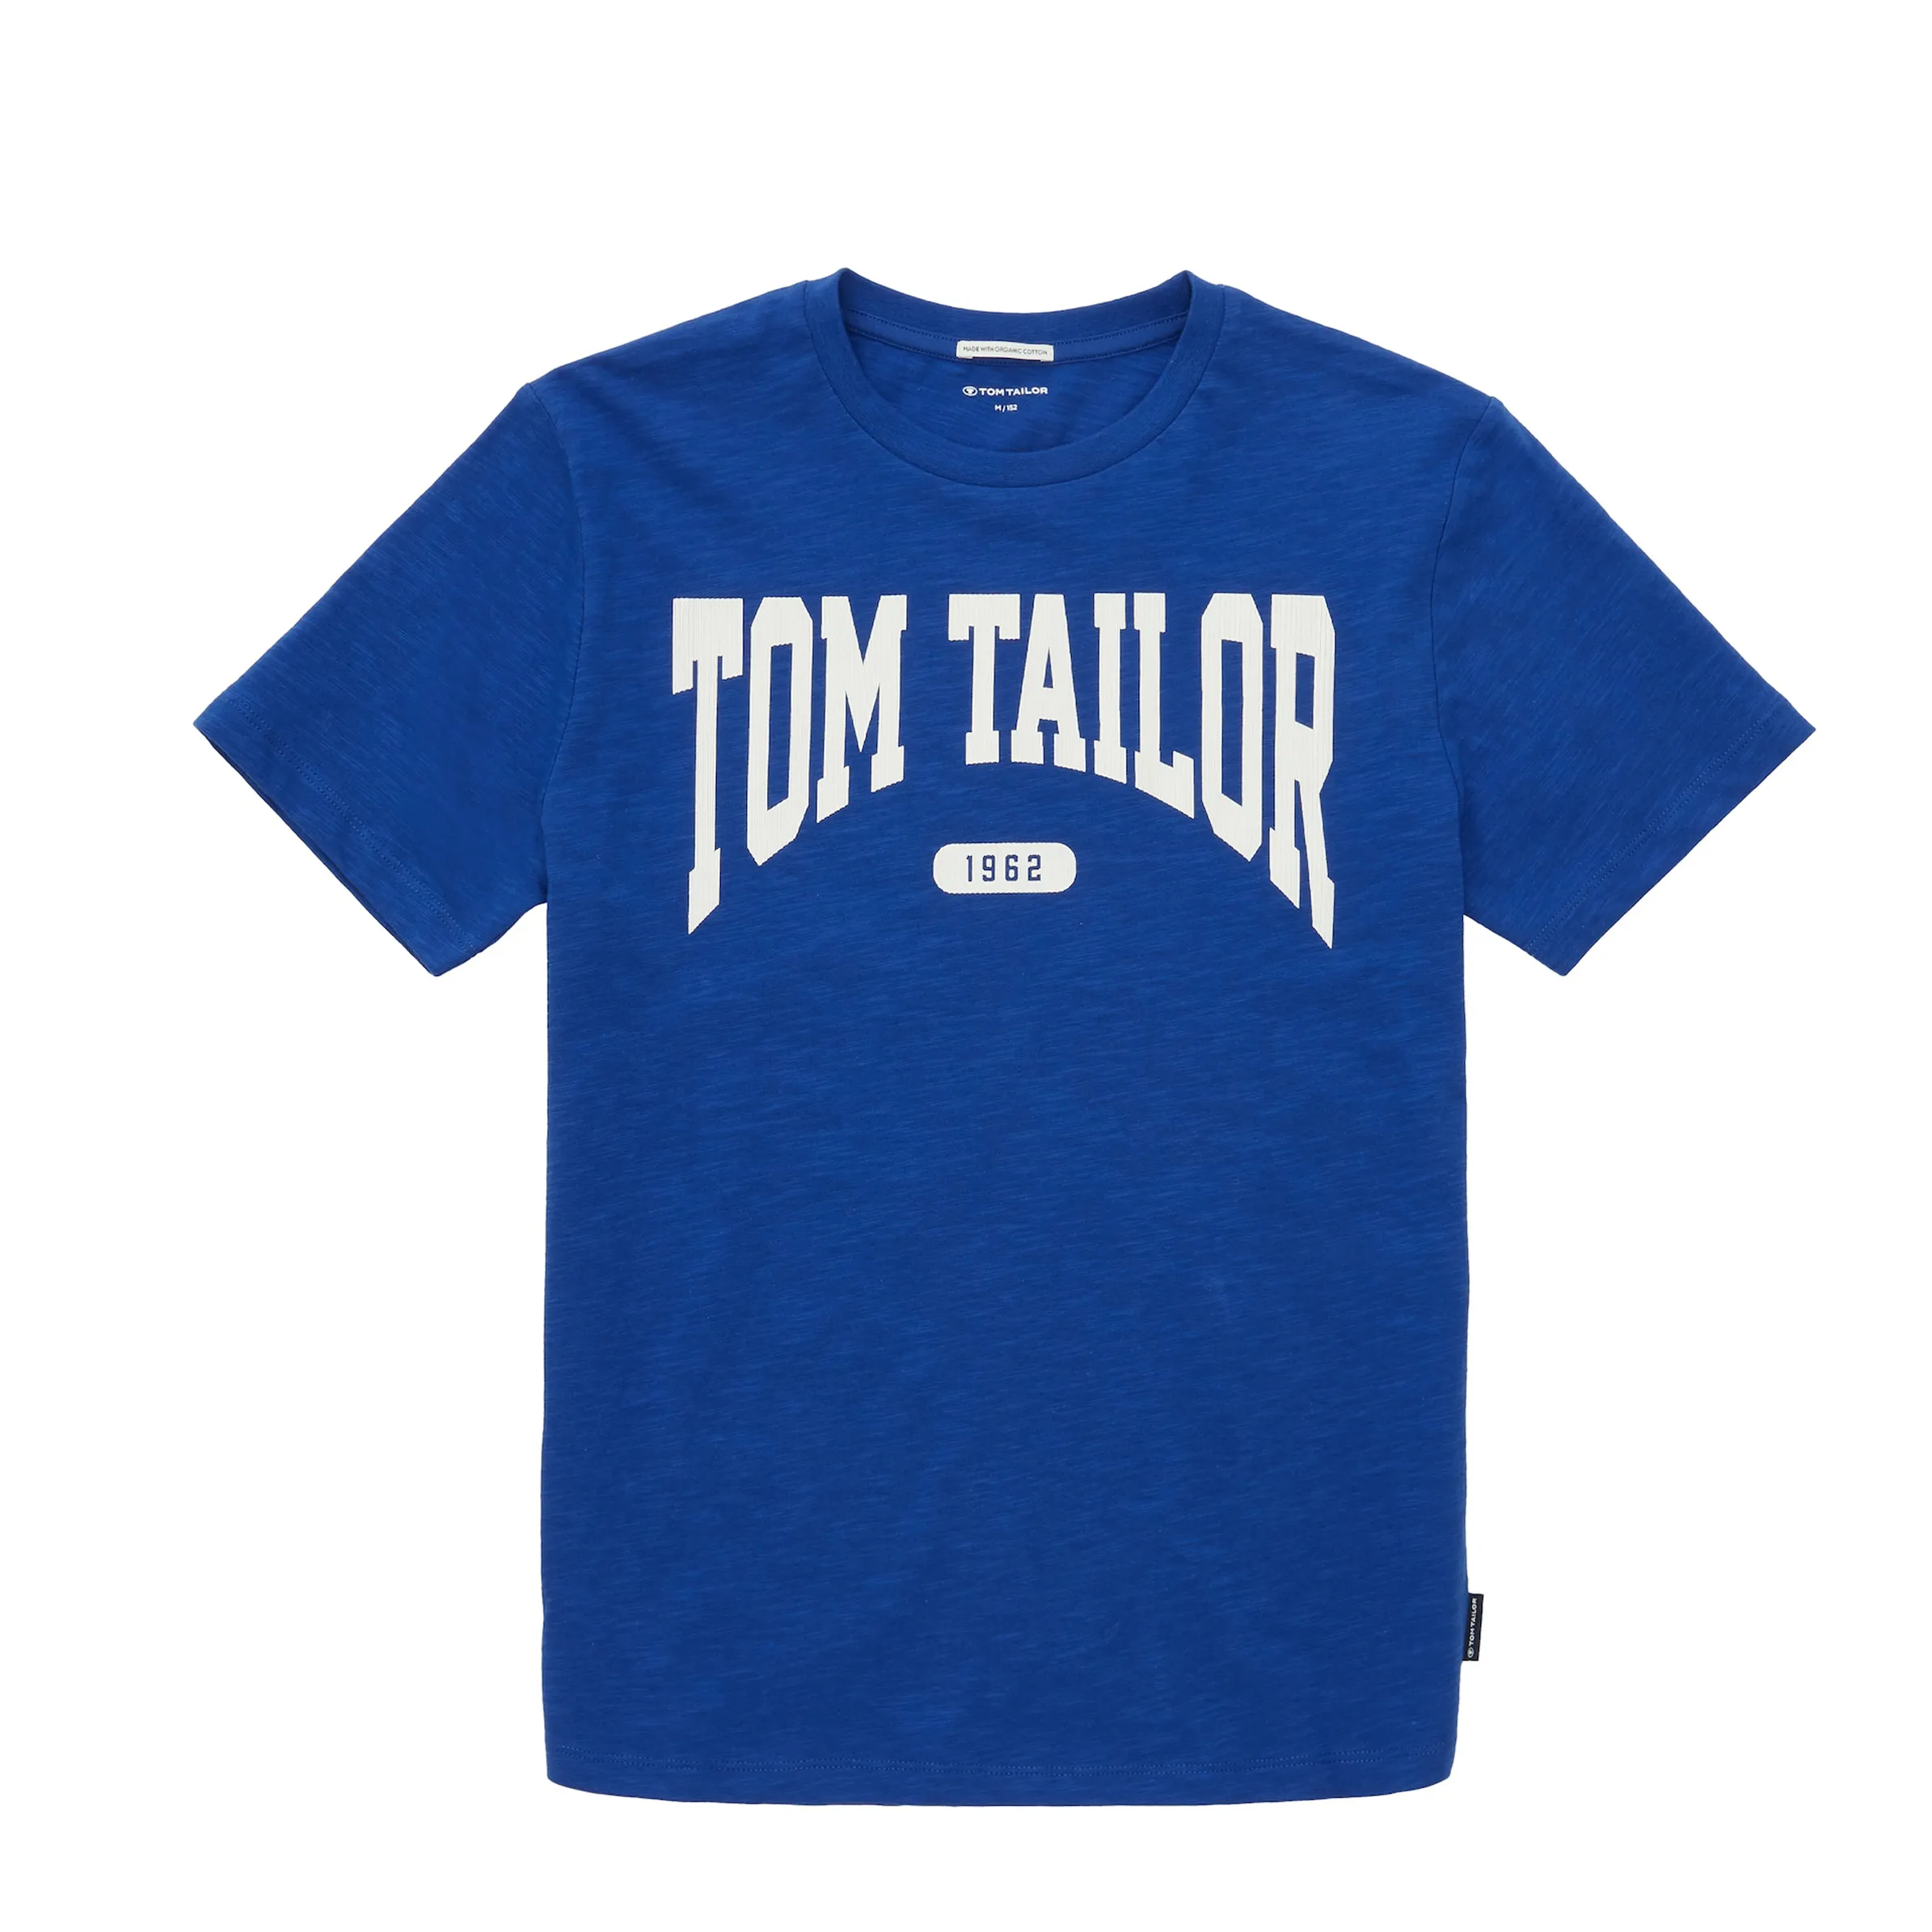 Tom Tailor 1037515 regular printed slub t Blau 883588 14531 1